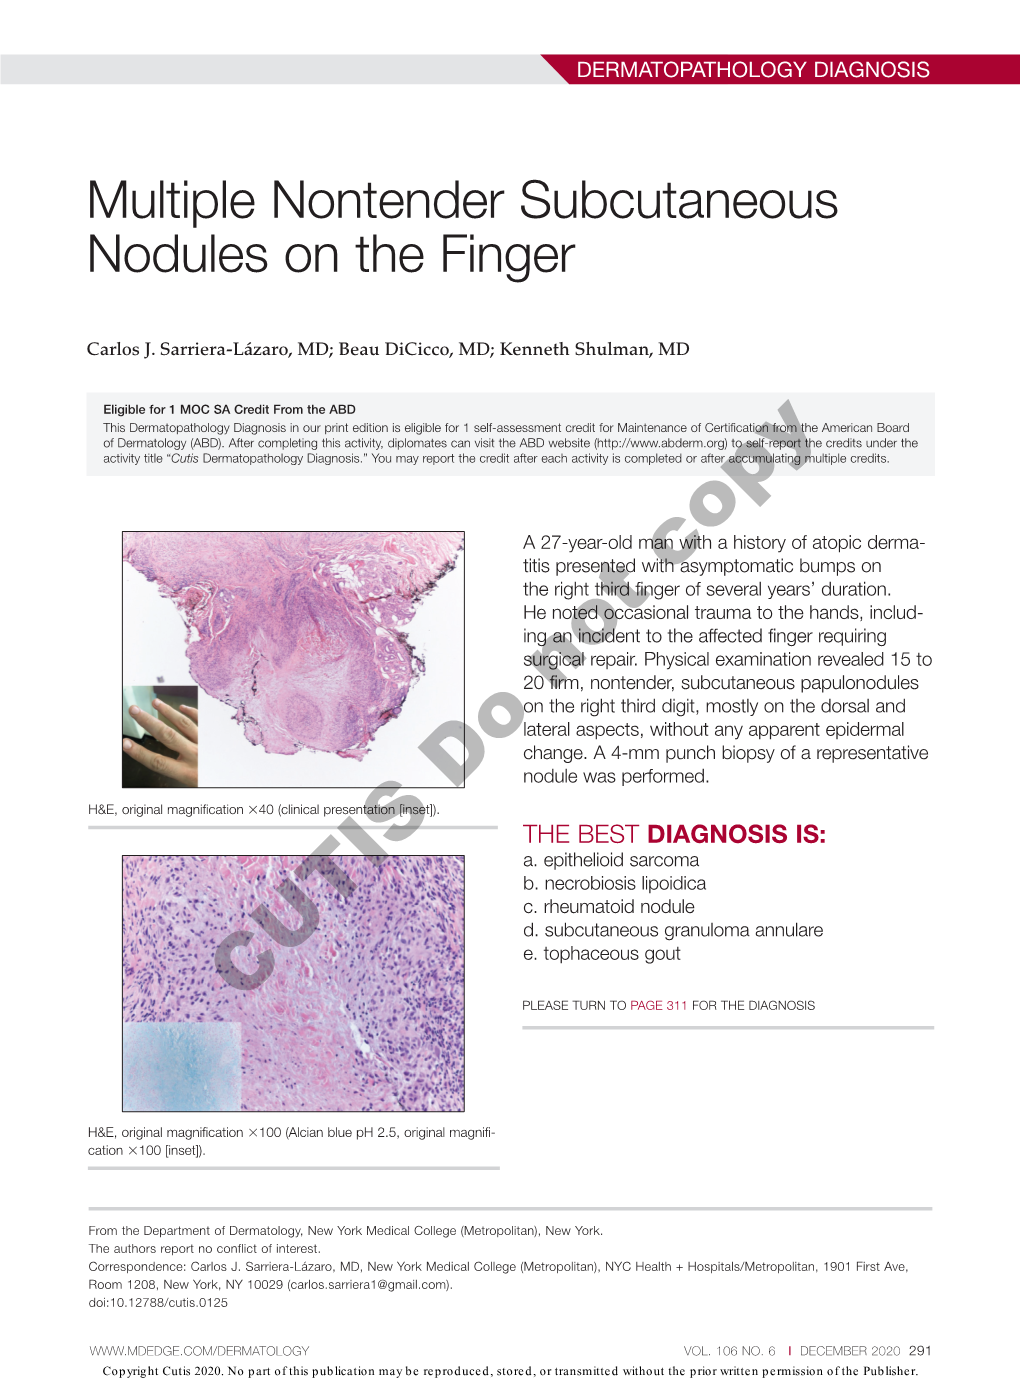 Multiple Nontender Subcutaneous Nodules on the Finger